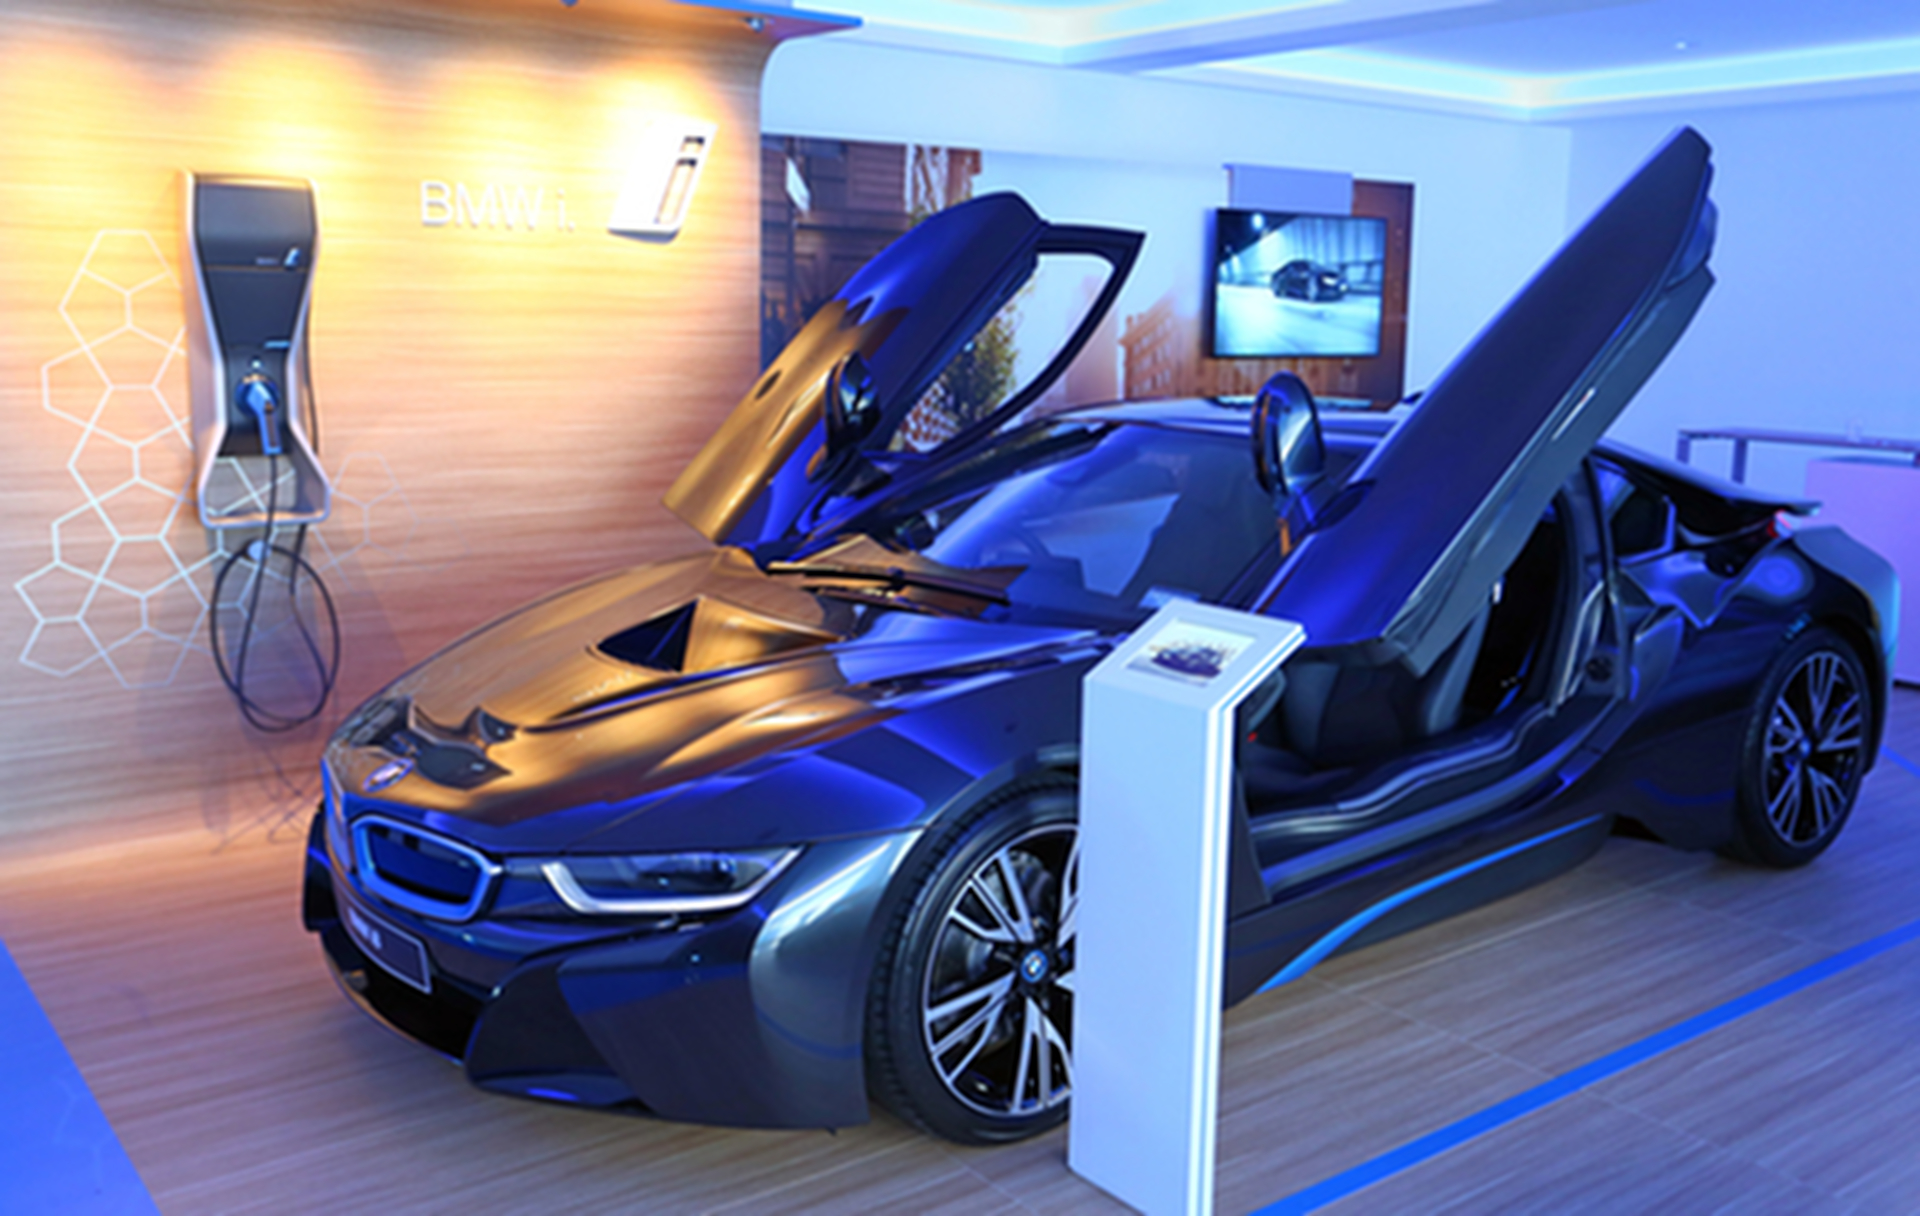 Dealership for BMW i opens